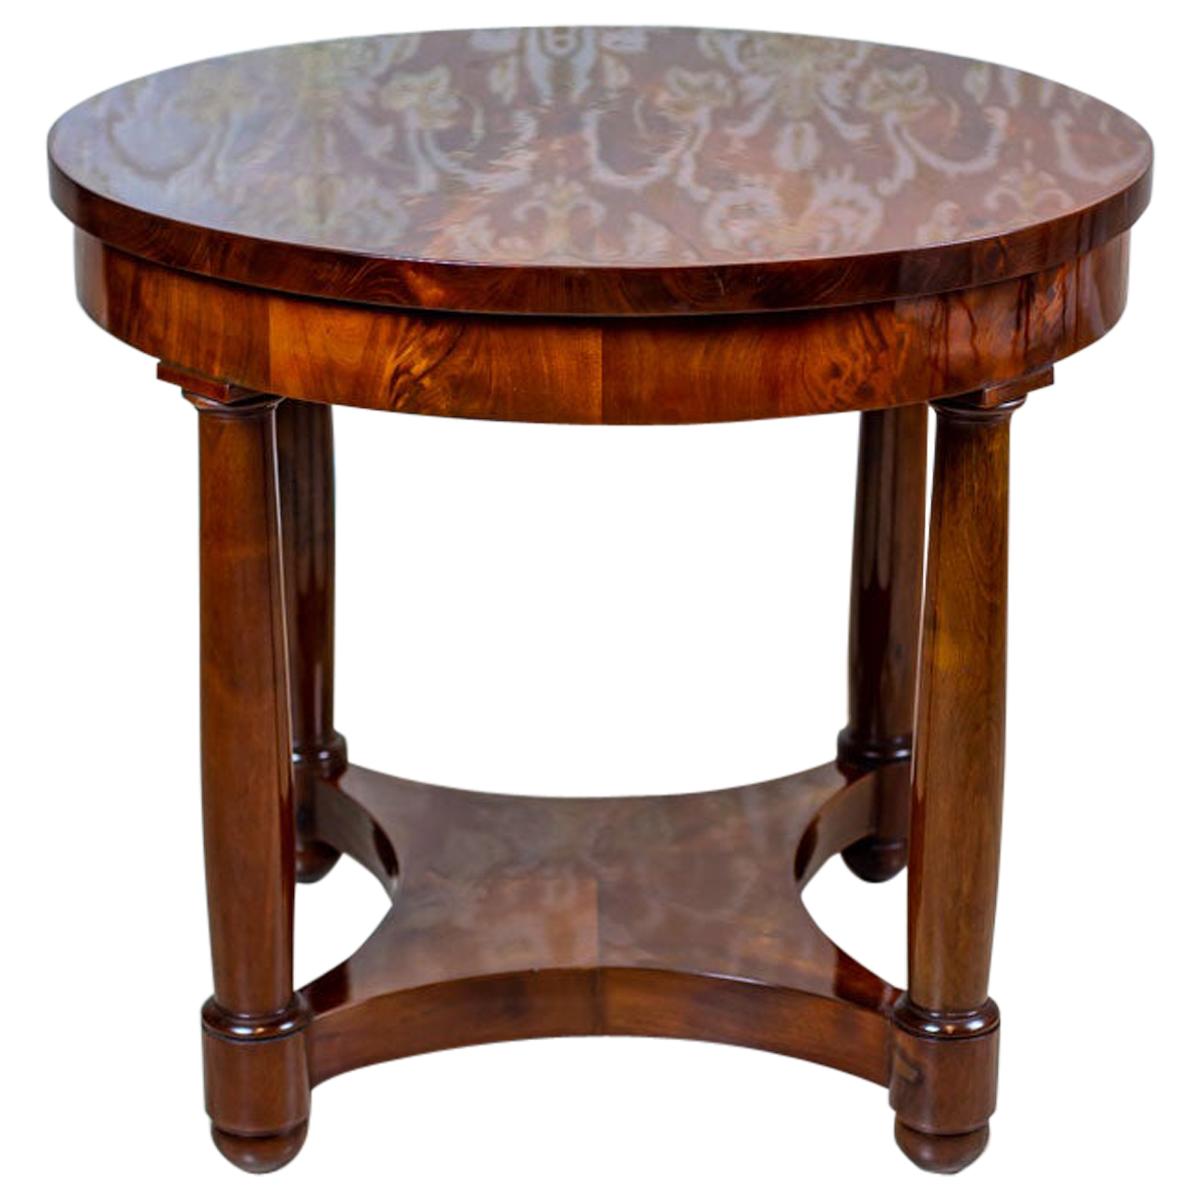 19th Century Oval Biedermeier Table